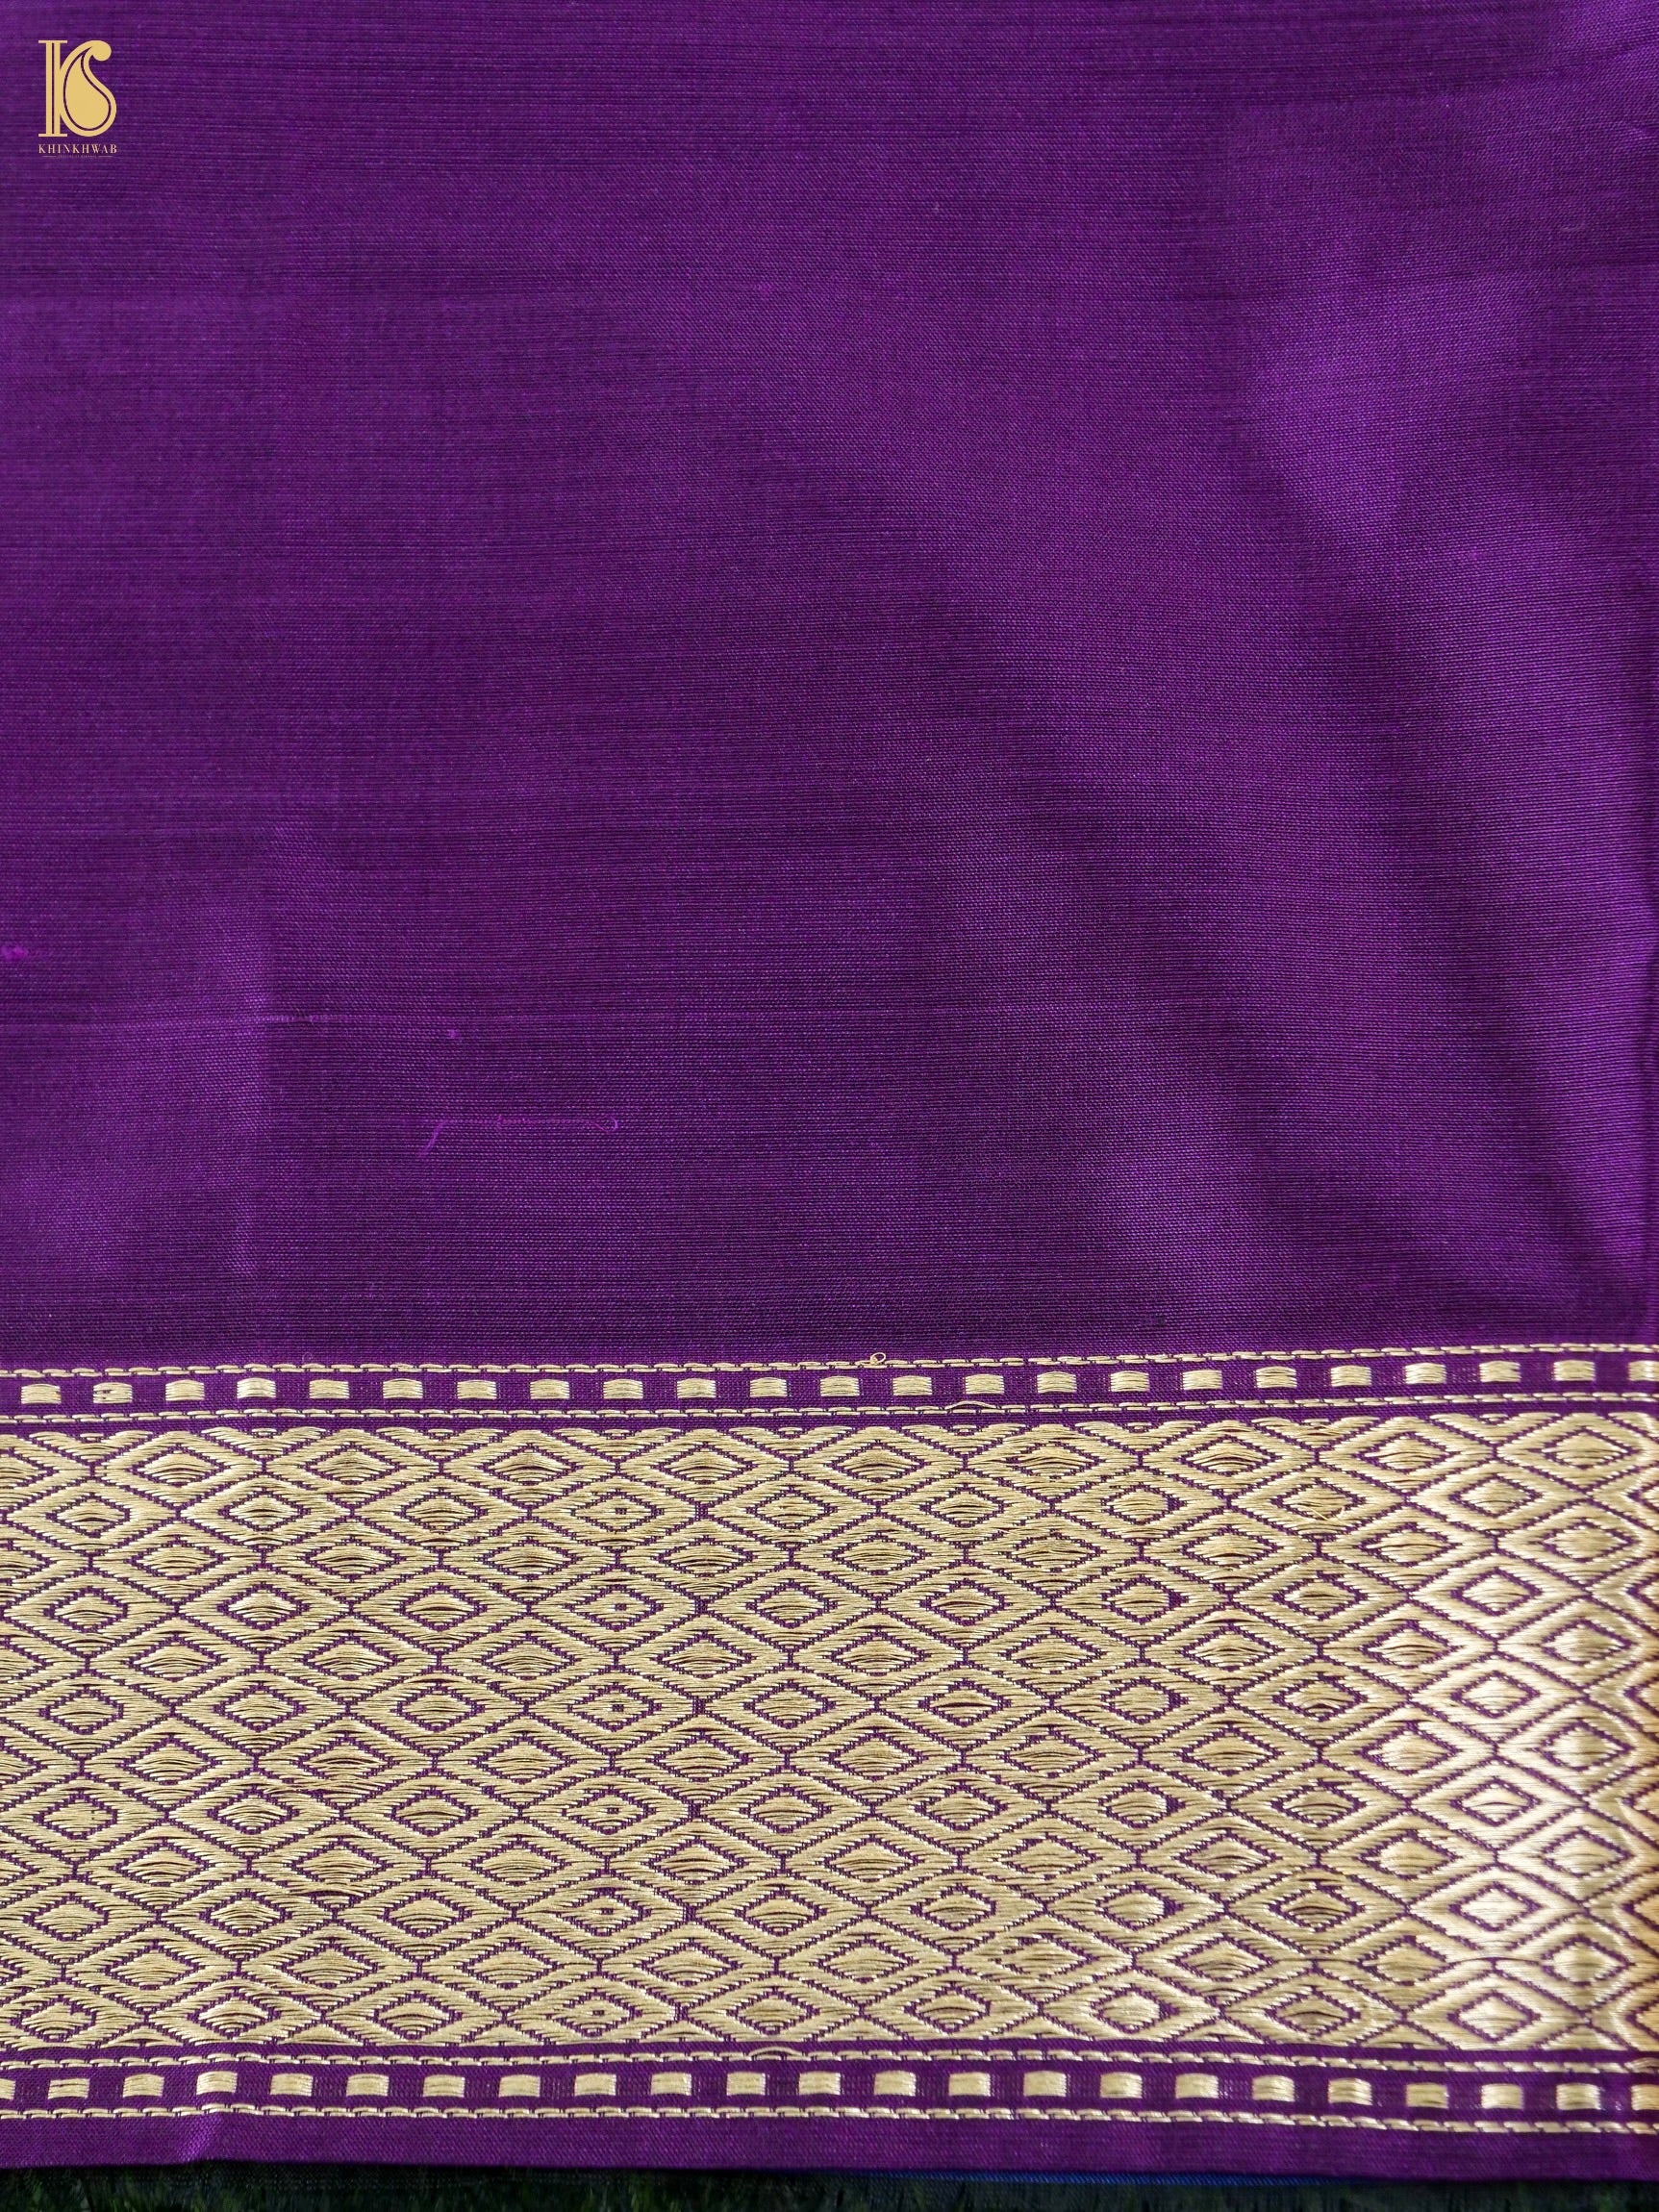 Handloom Banarasi Katan Silk Crane Saree